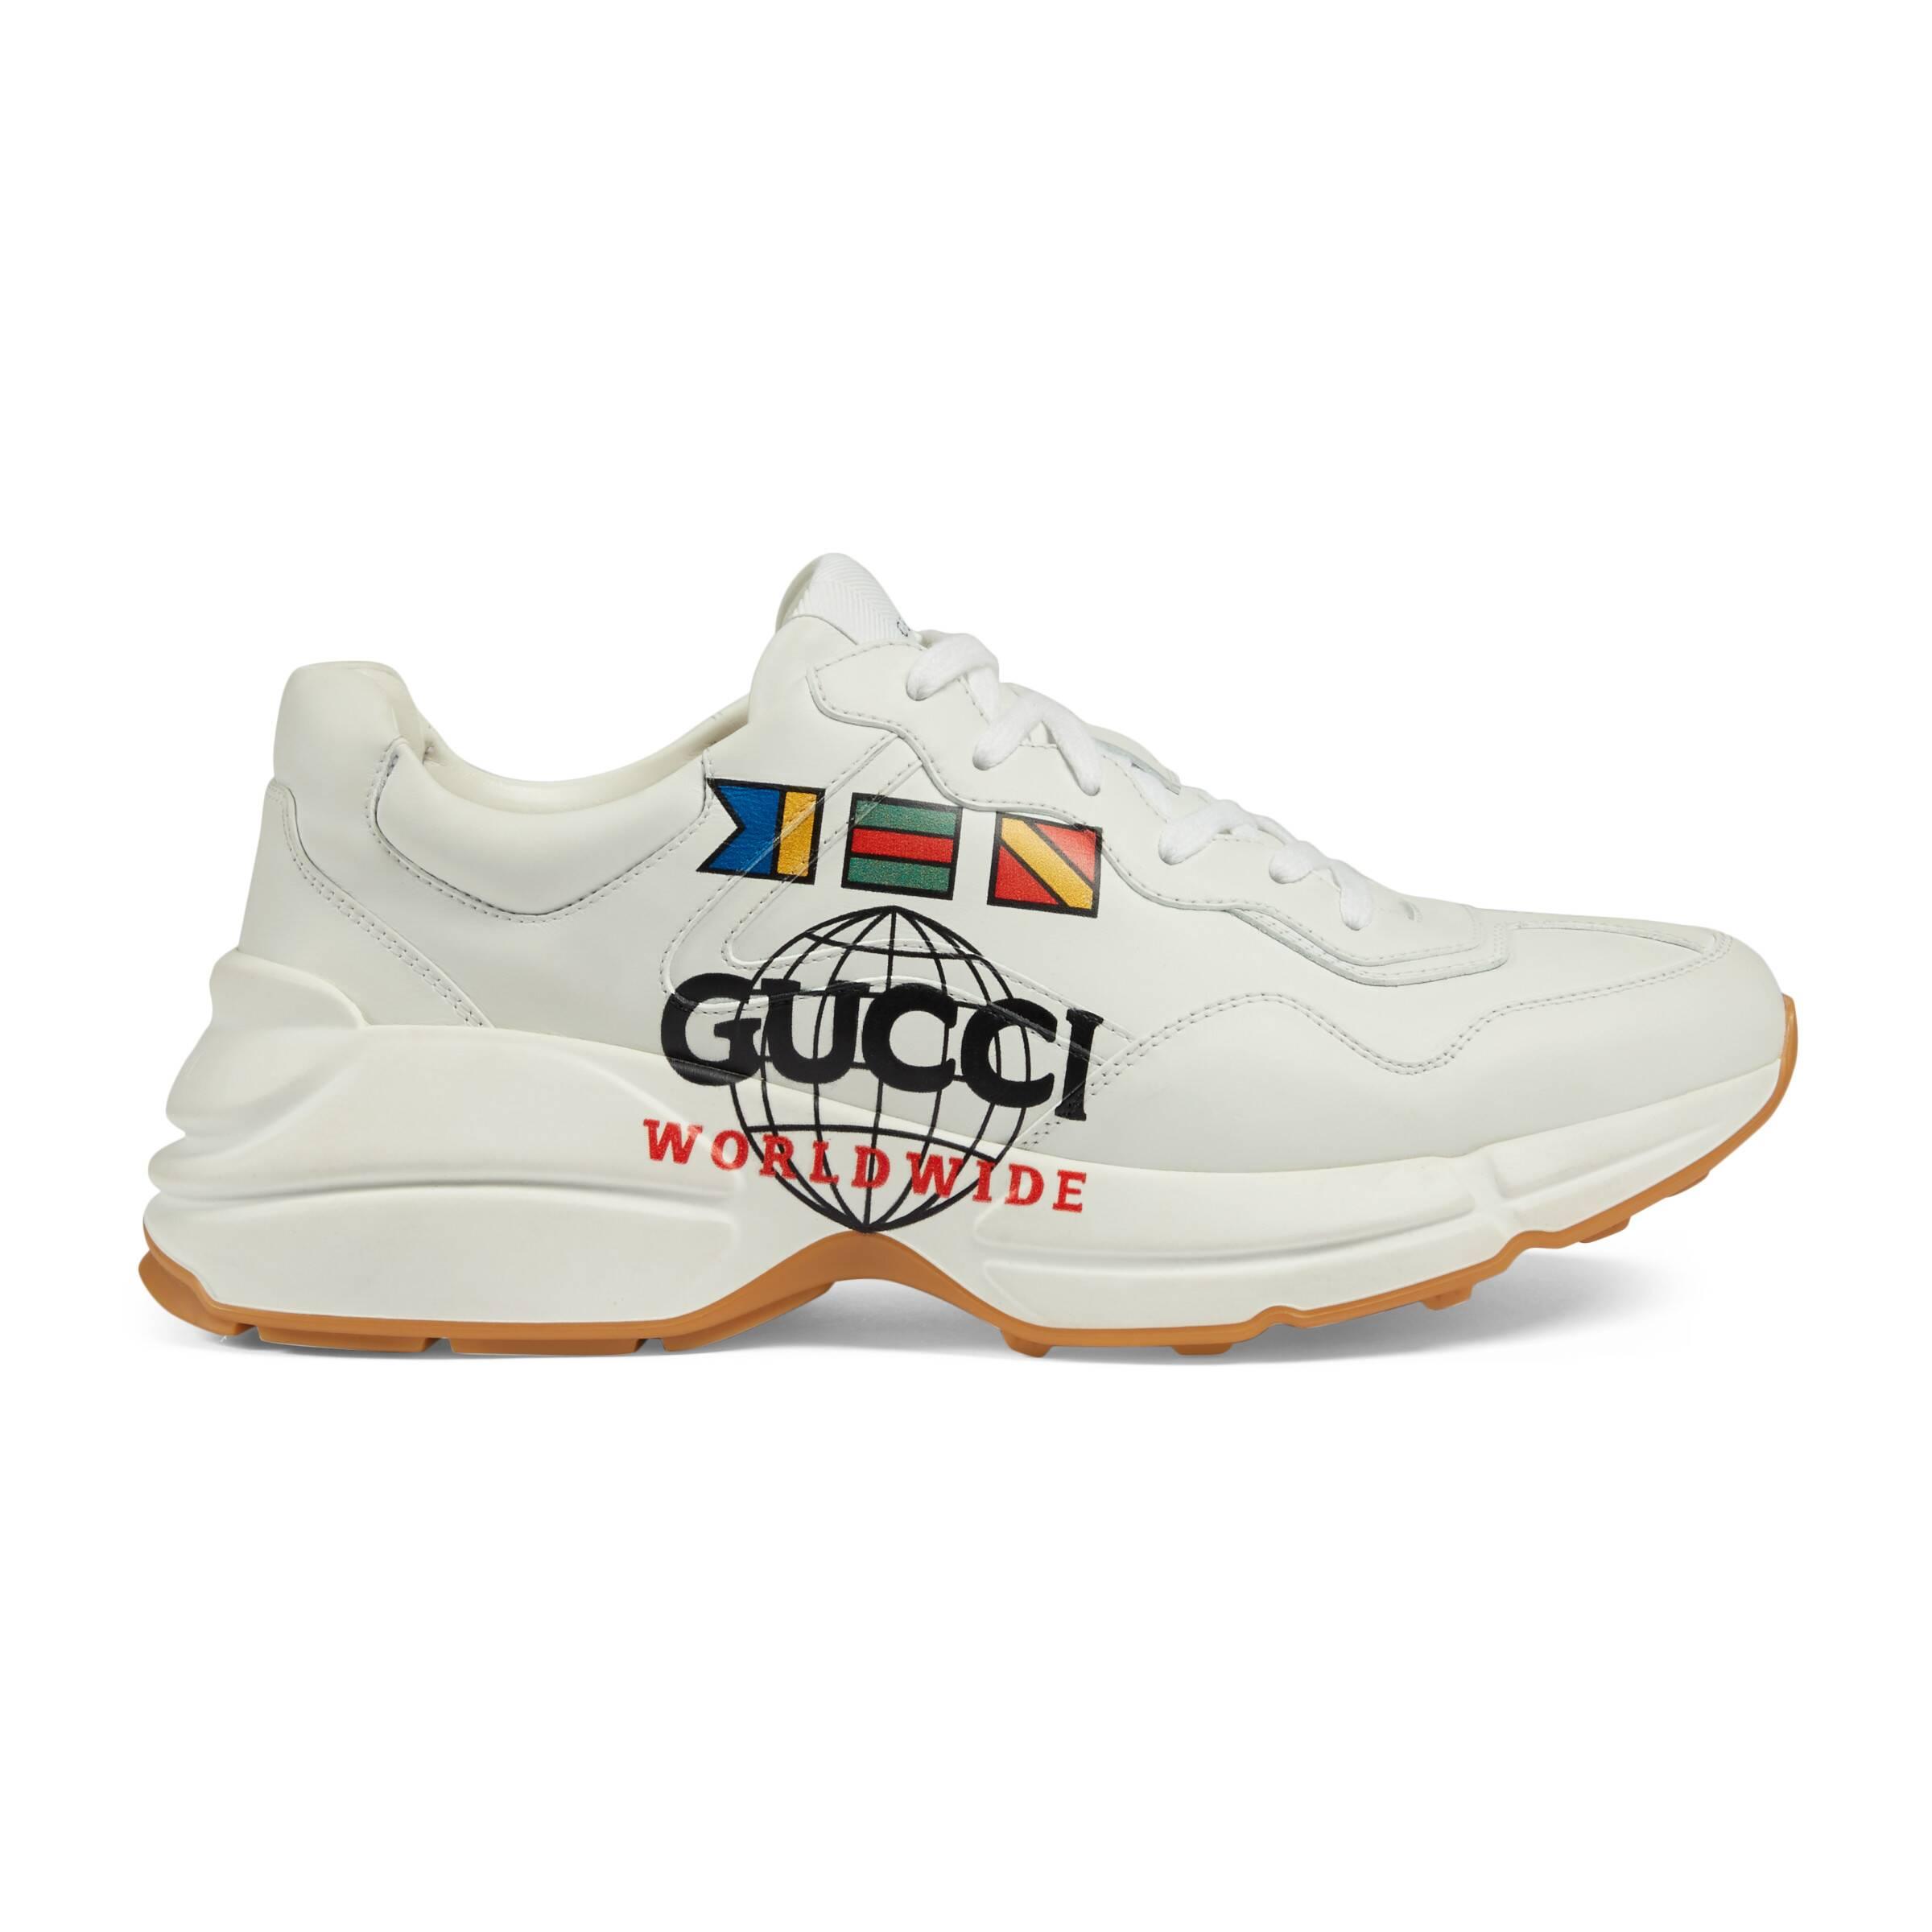 Gucci Rhyton Worldwide Sneaker in White for Men - Lyst